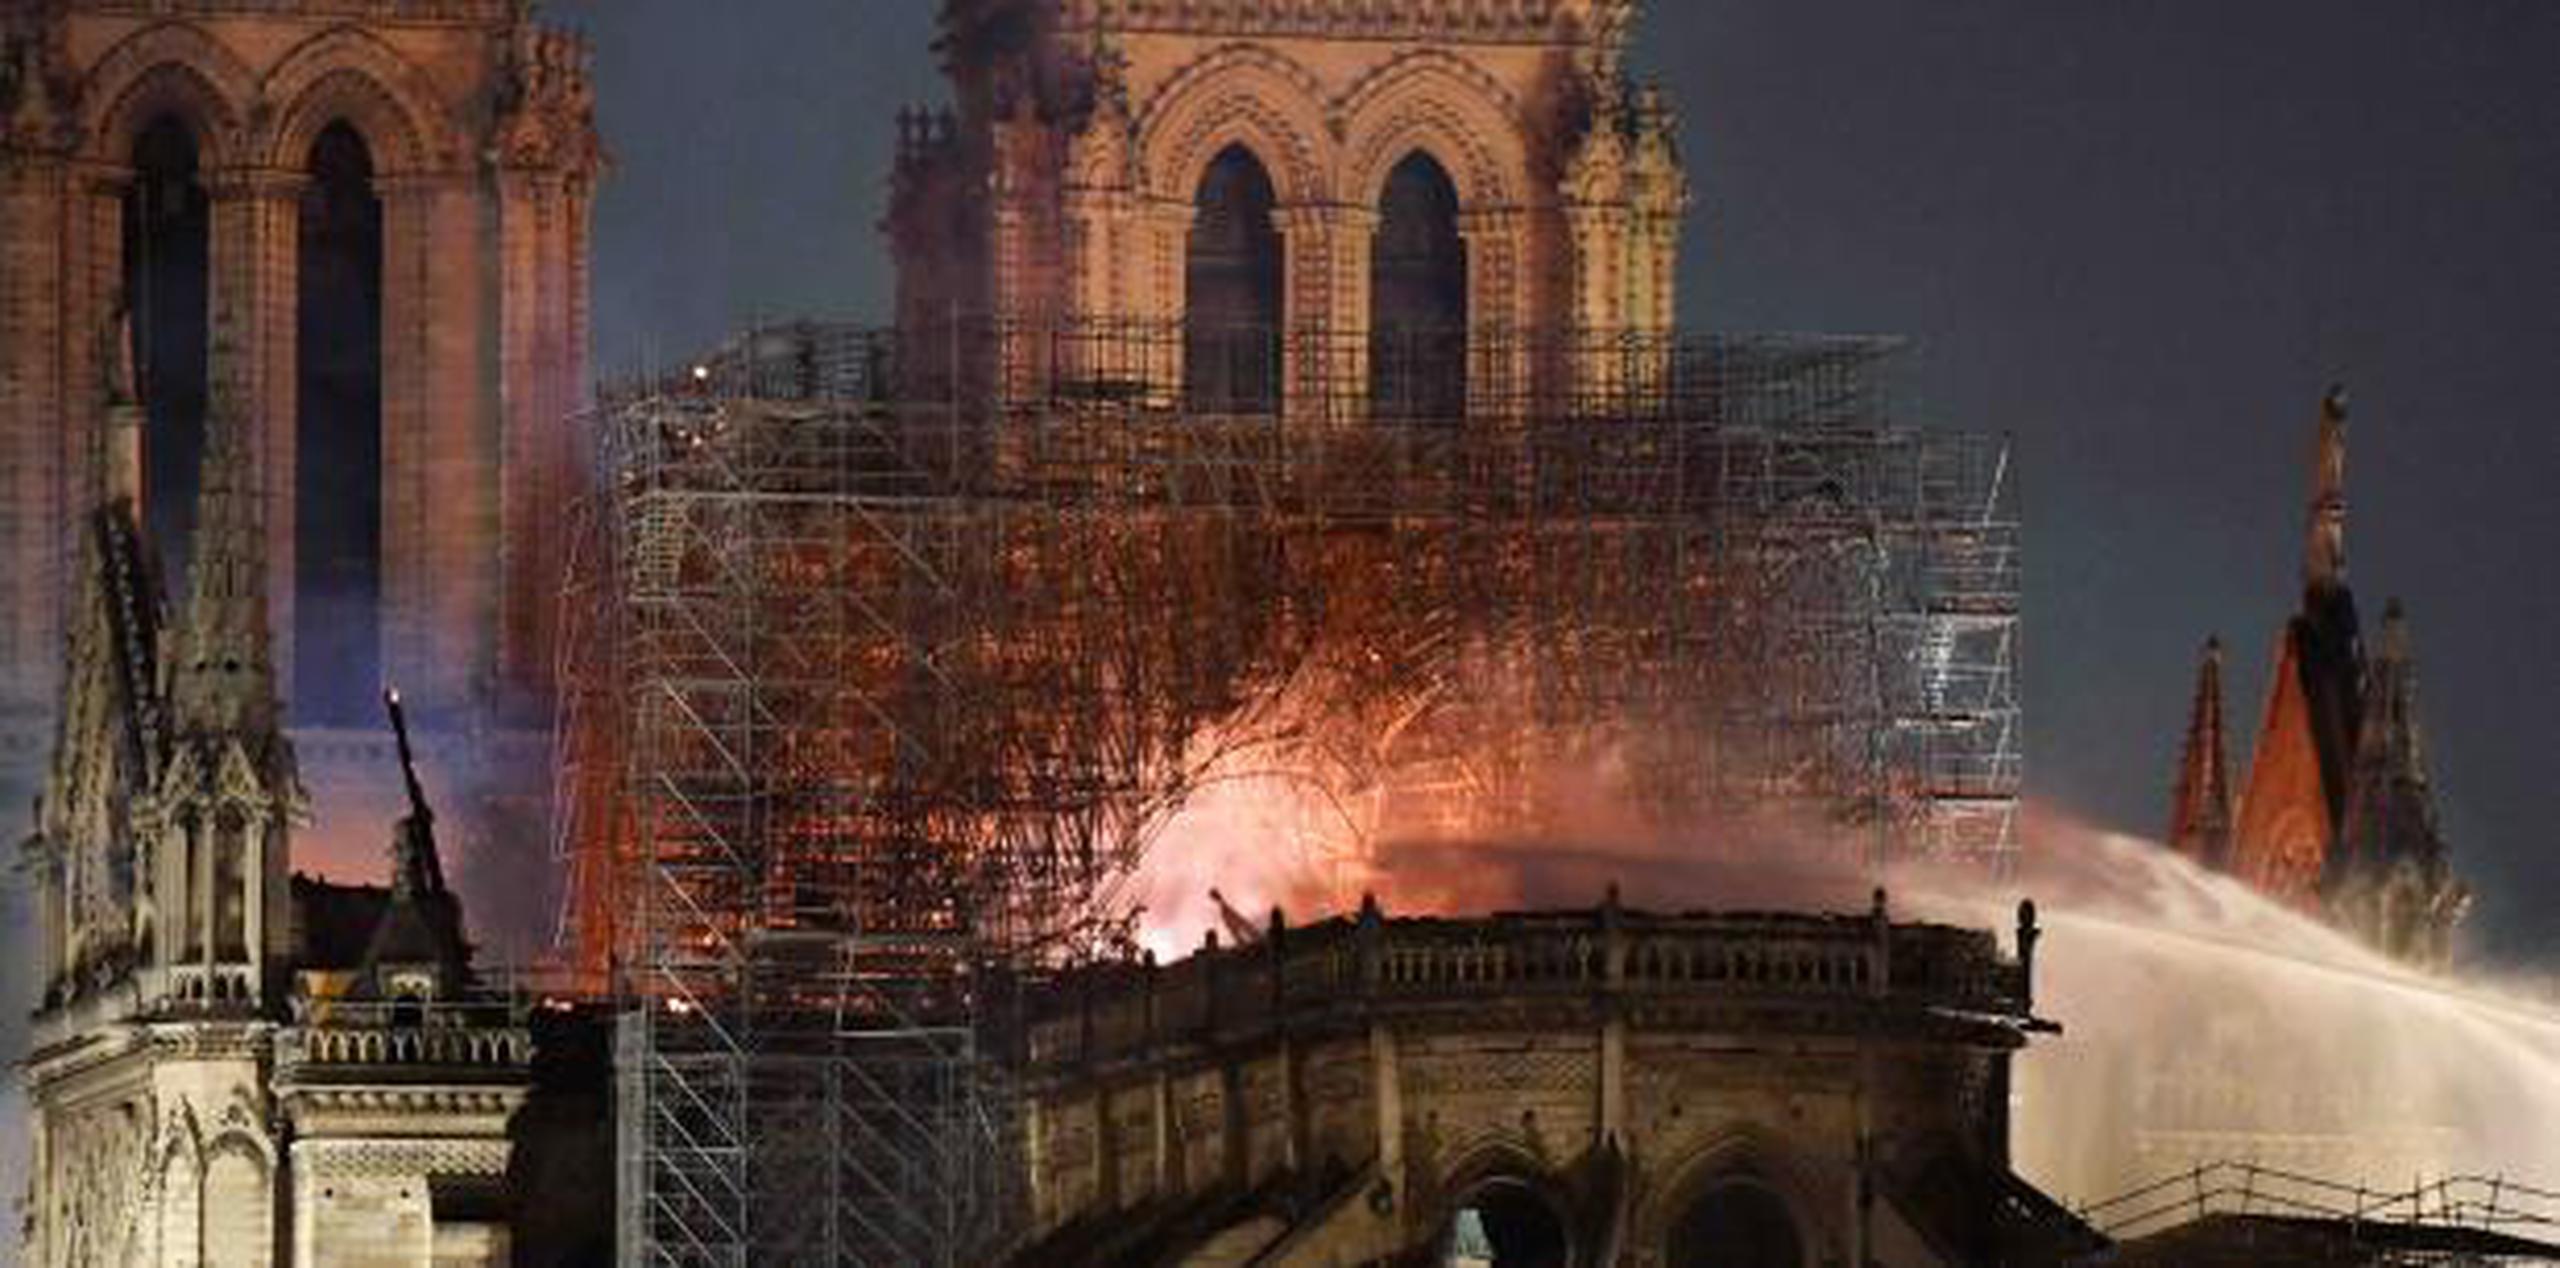 La cubierta de la catedral no fue posible salvarla a pesar de los esfuerzos por apagar el incendio. (EFE / Julien De Rosa)